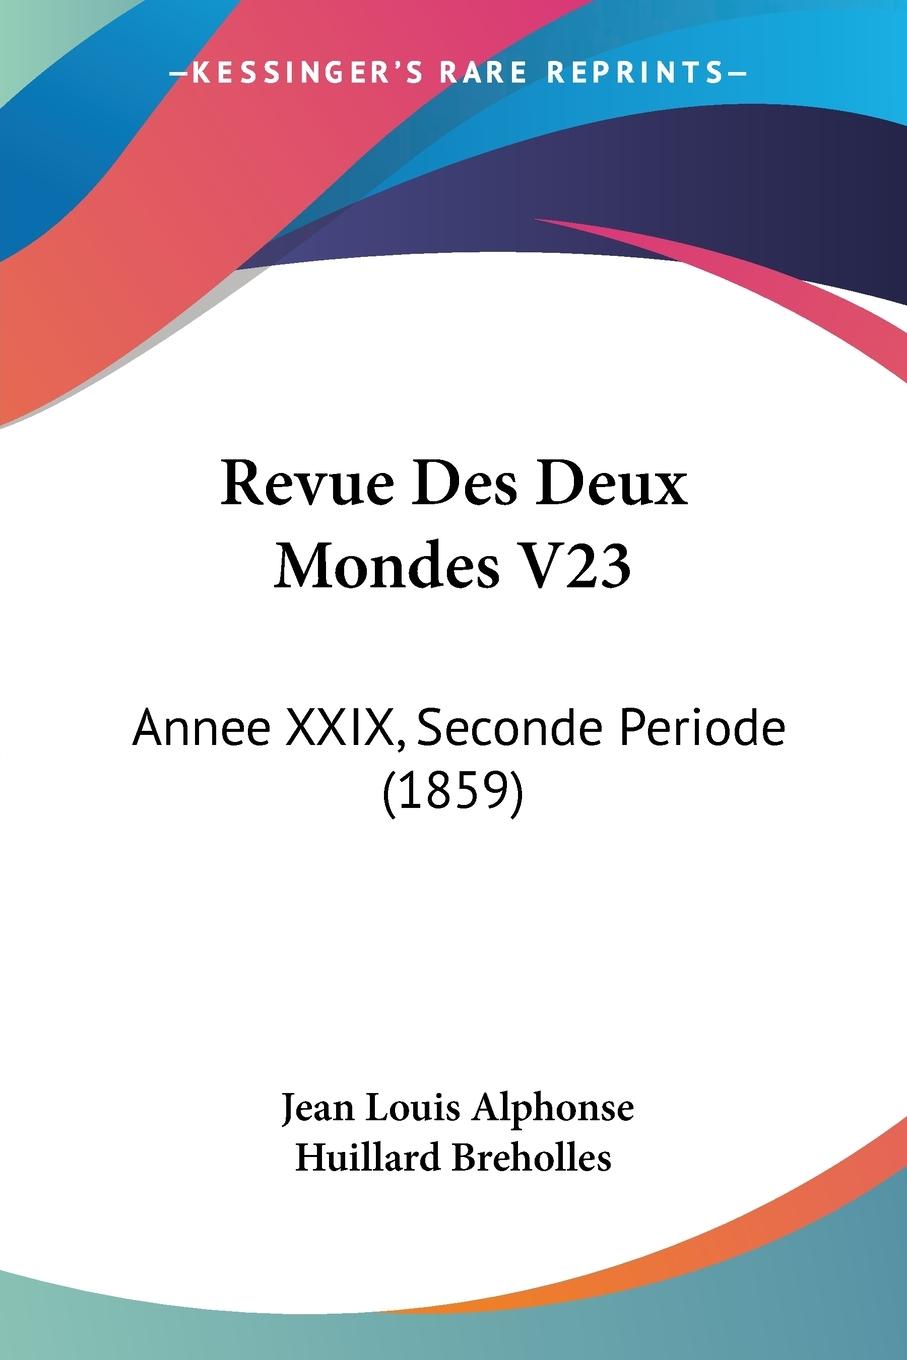 Revue Des Deux Mondes V23 - Breholles, Jean Louis Alphonse Huillard